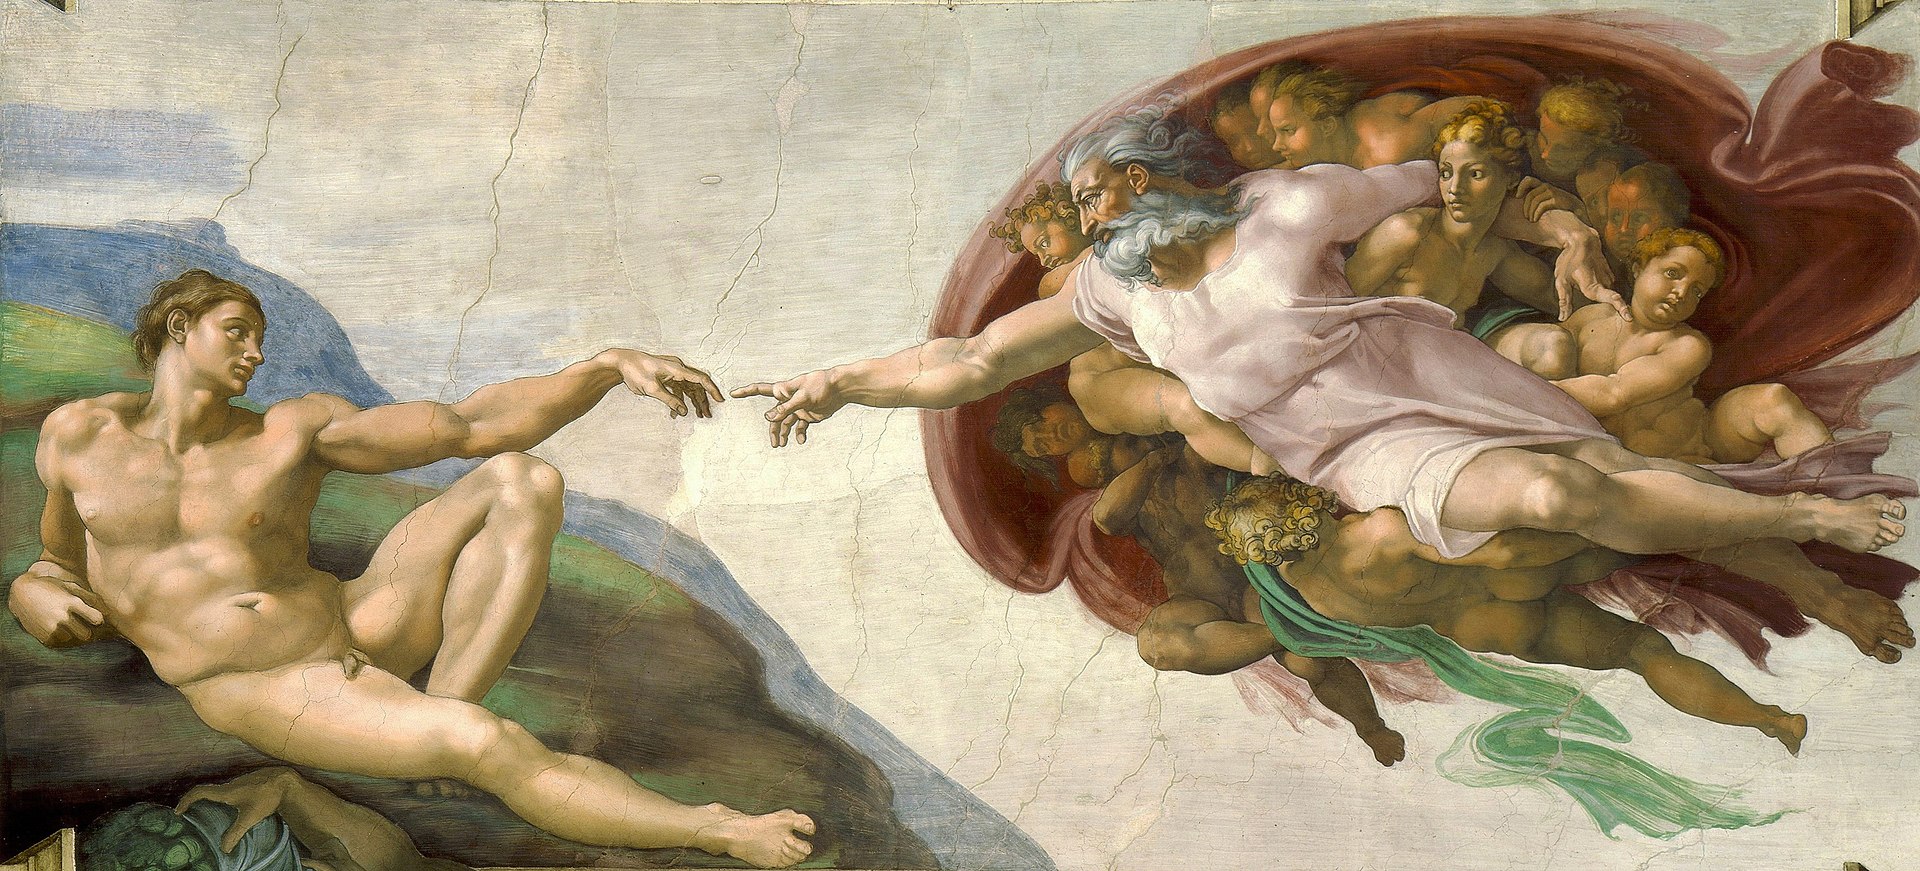 De schepping van Adam is een onderdeel van het fresco op het gewelf van de Sixtijnse Kapel in Vaticaanstad geschilderd door Michelangelo rond 1511